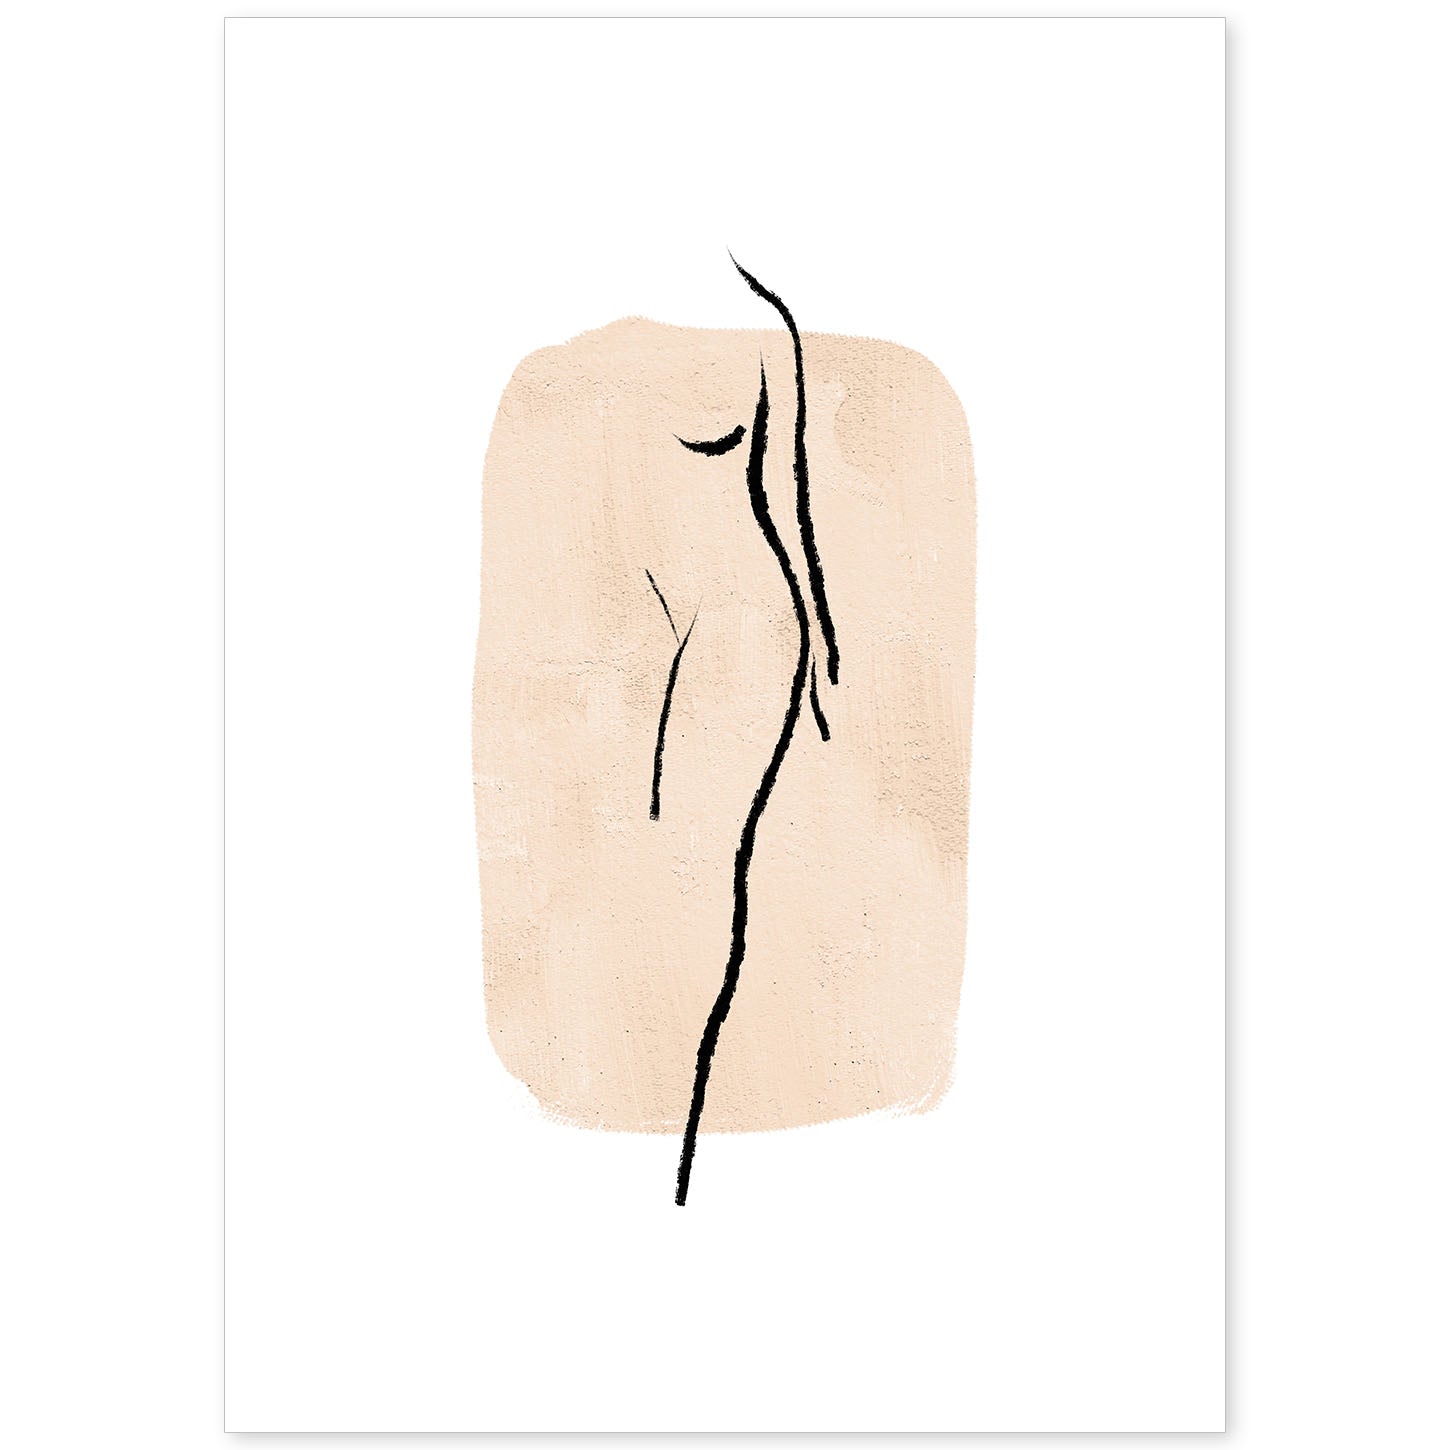 Poster con ilustracion de mujer. Dibujos con formas, caras, cuerpos y gestos de mujeres. 'Mujeres 13'.-Artwork-Nacnic-A4-Sin marco-Nacnic Estudio SL